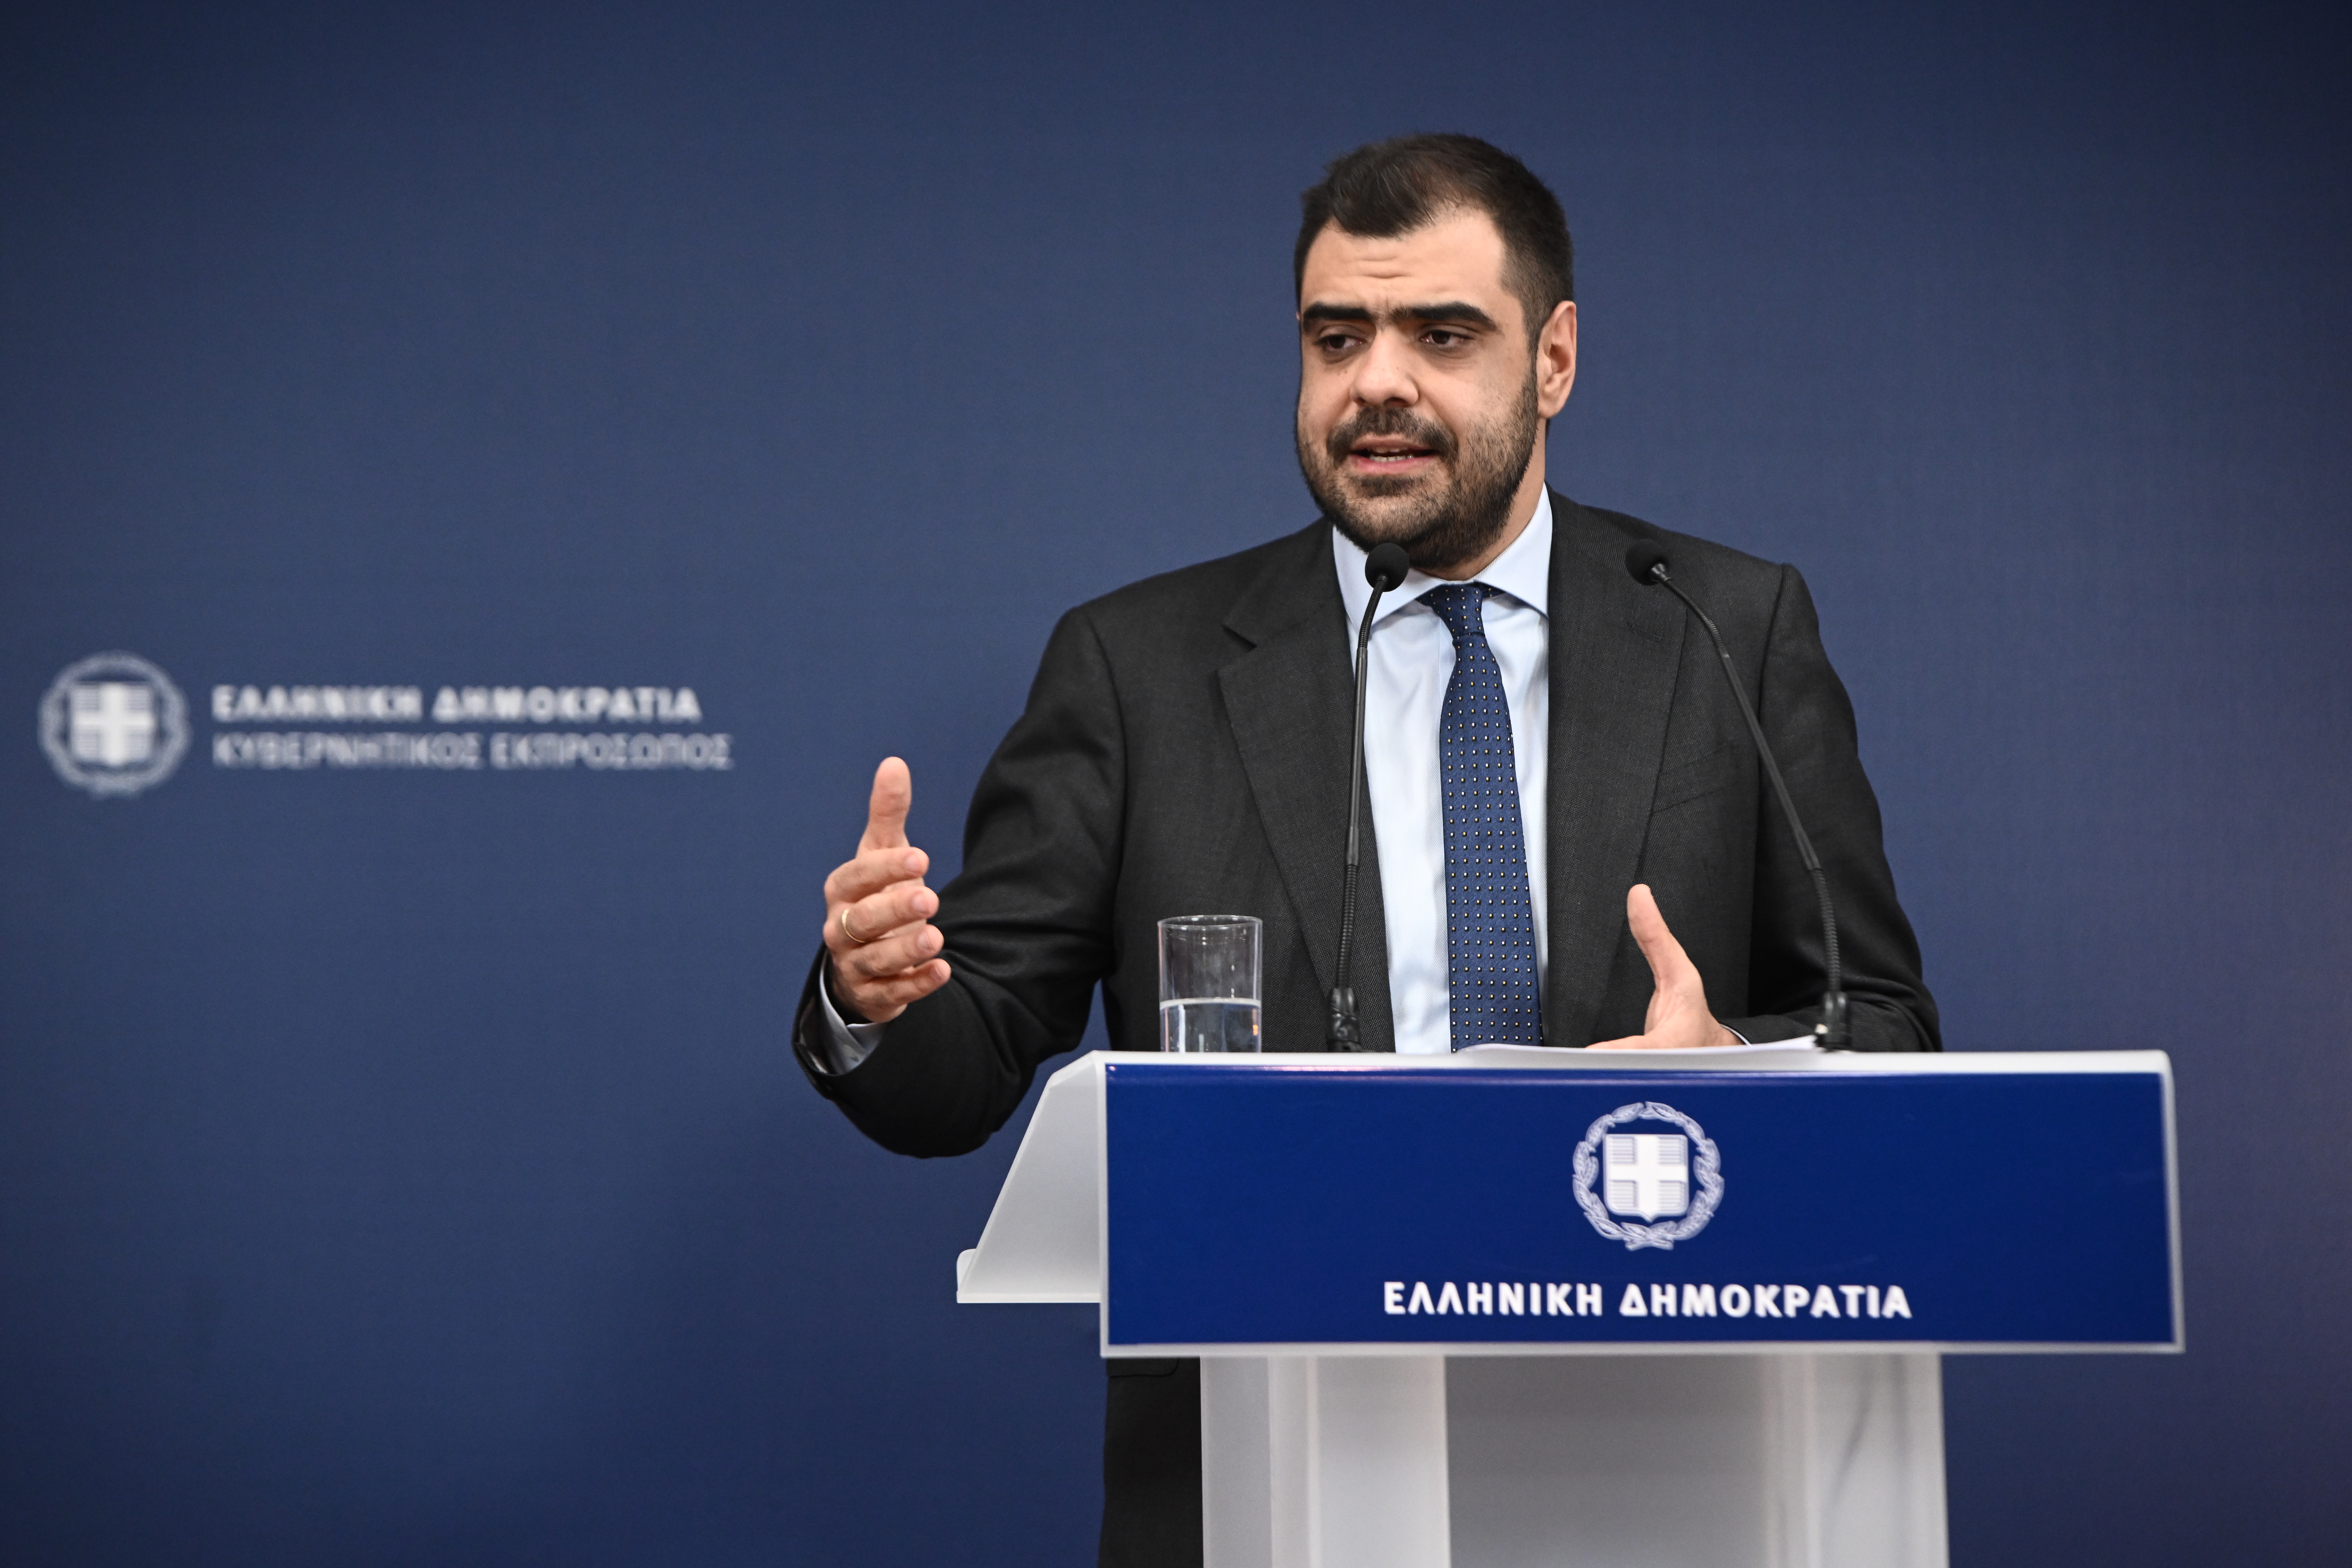 Π. Μαρινάκης: Αναβάλλεται το Υπουργικό Συμβούλιο για μετά το πέρας της συζήτησης στη Βουλή